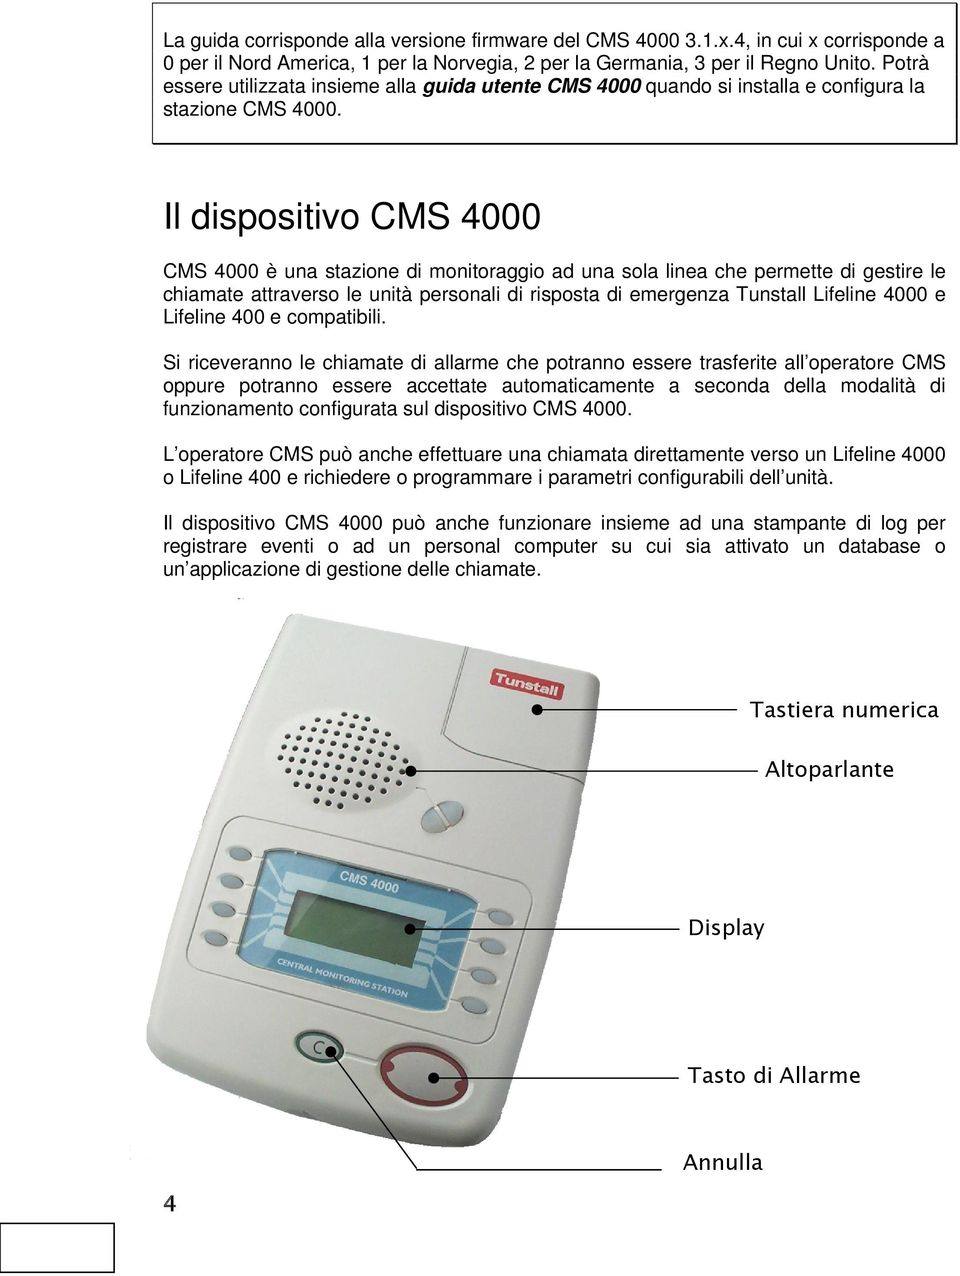 Il dispositivo CMS 4000 CMS 4000 è una stazione di monitoraggio ad una sola linea che permette di gestire le chiamate attraverso le unità personali di risposta di emergenza Tunstall Lifeline 4000 e